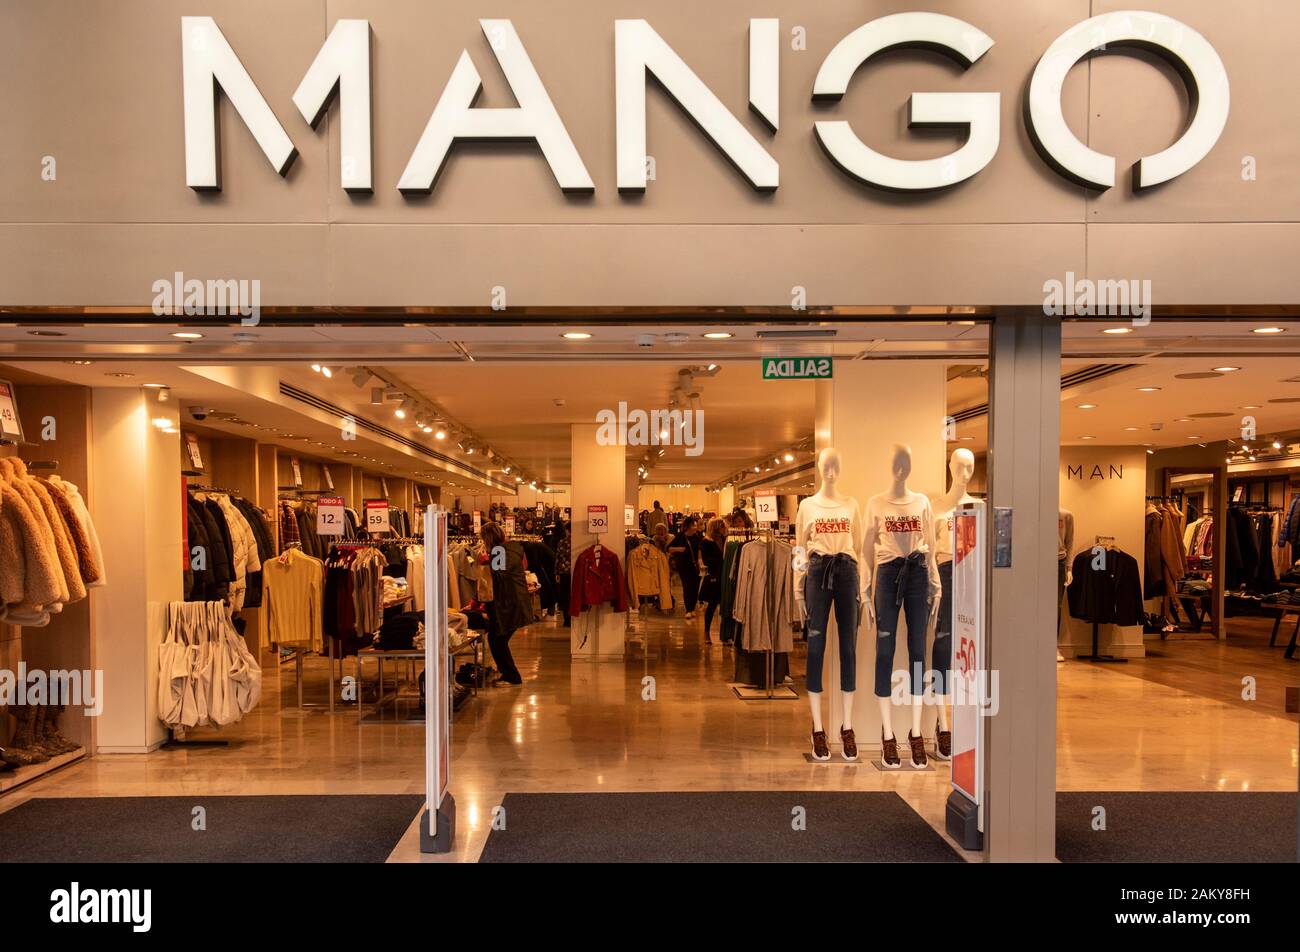 La multinacional española marca de ropa tienda de Mango en España  Fotografía de stock - Alamy